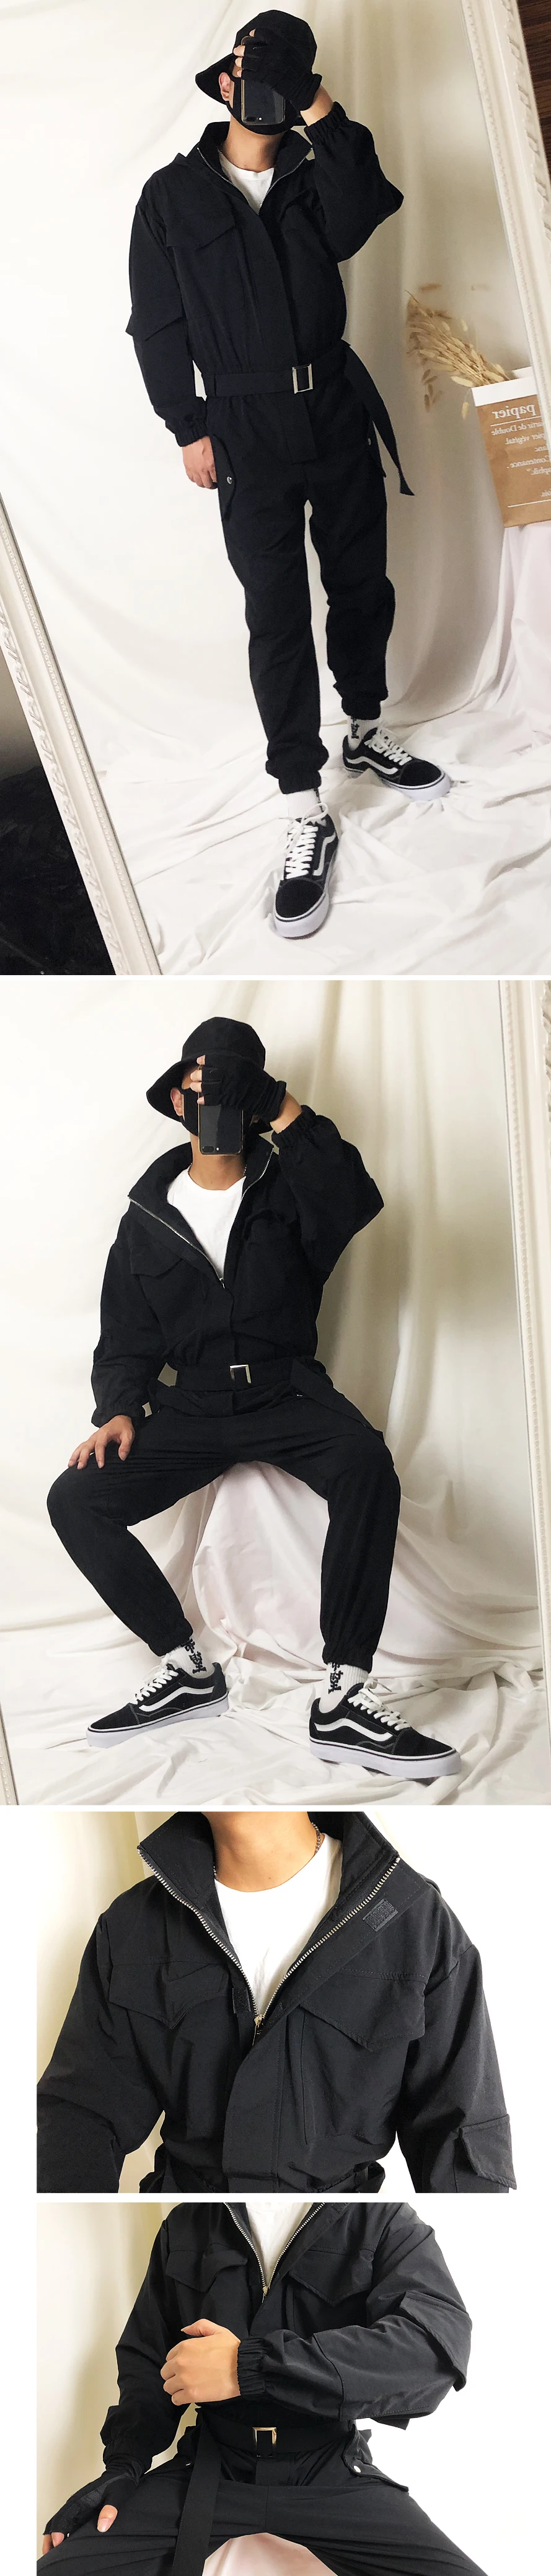 Мужские осенние черные винтажные панк рок хип хоп комбинезоны корейский стиль куртка с капюшоном комбинезон для ночного клуба DJ певец брюки карго джоггеры